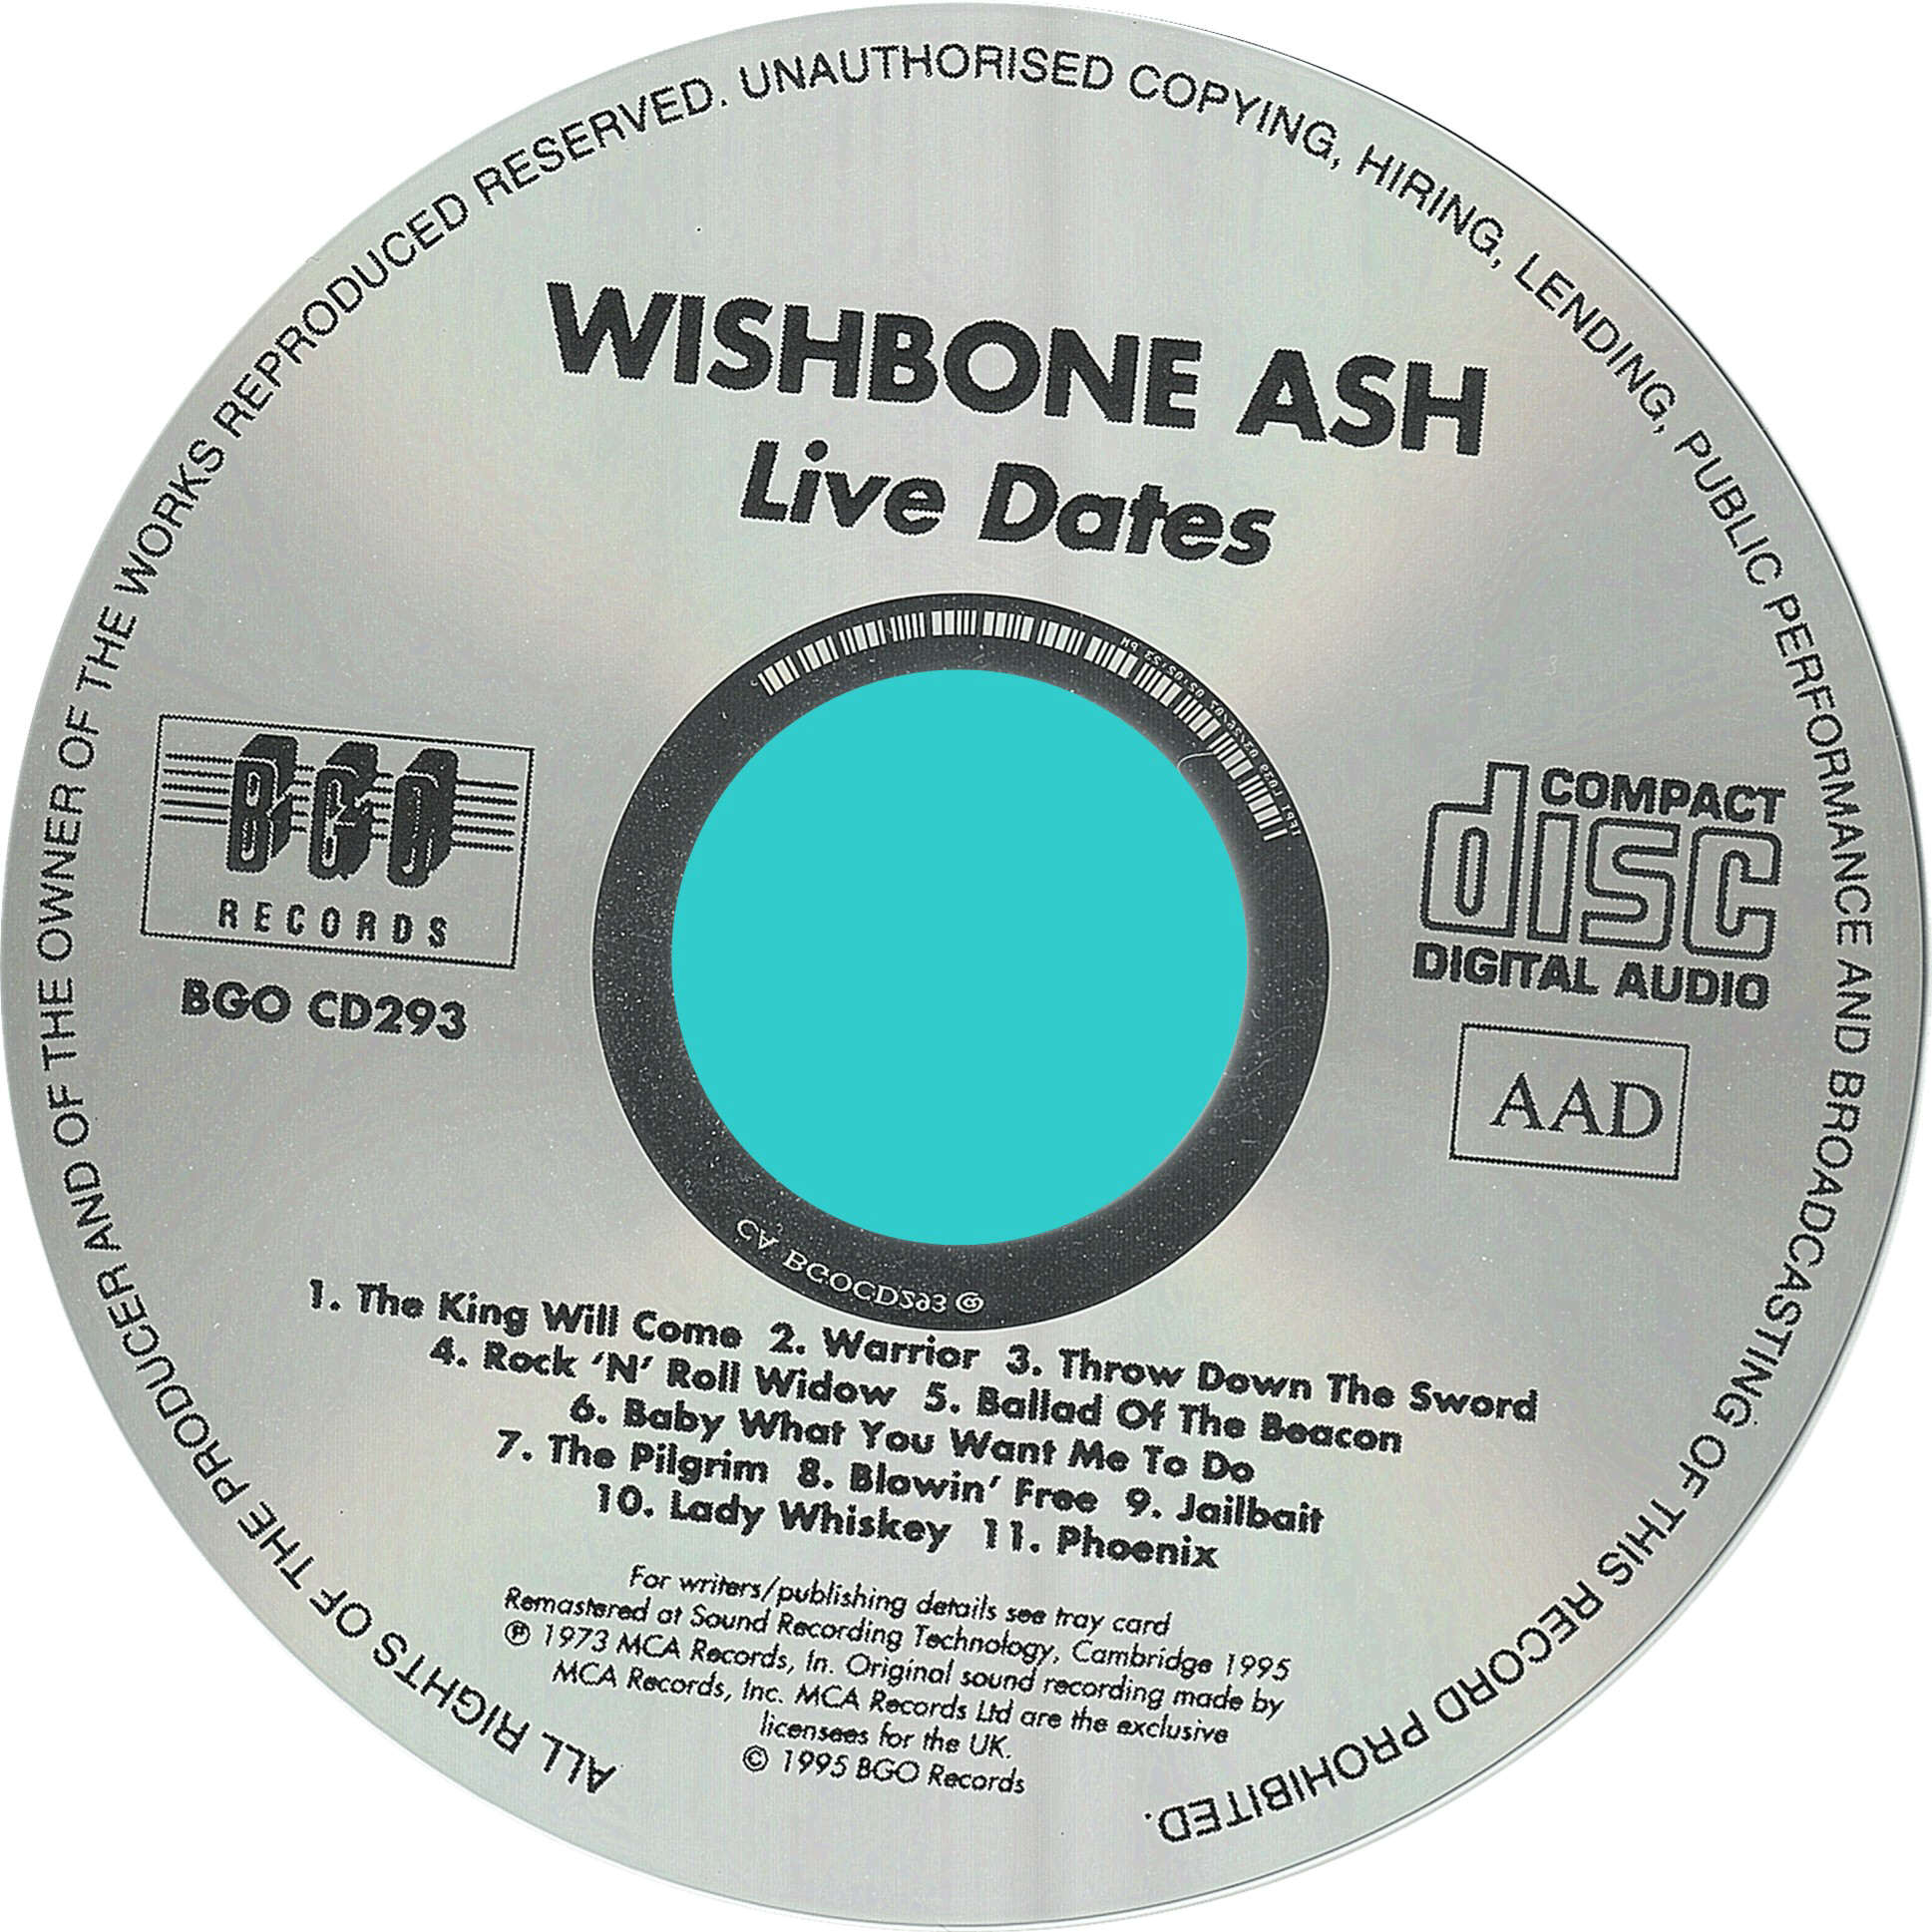 Wishbone Ash Live Dates 1973. Wishbone Ash Wishbone Ash 1970. Wishbone Ash here to hear 1989.